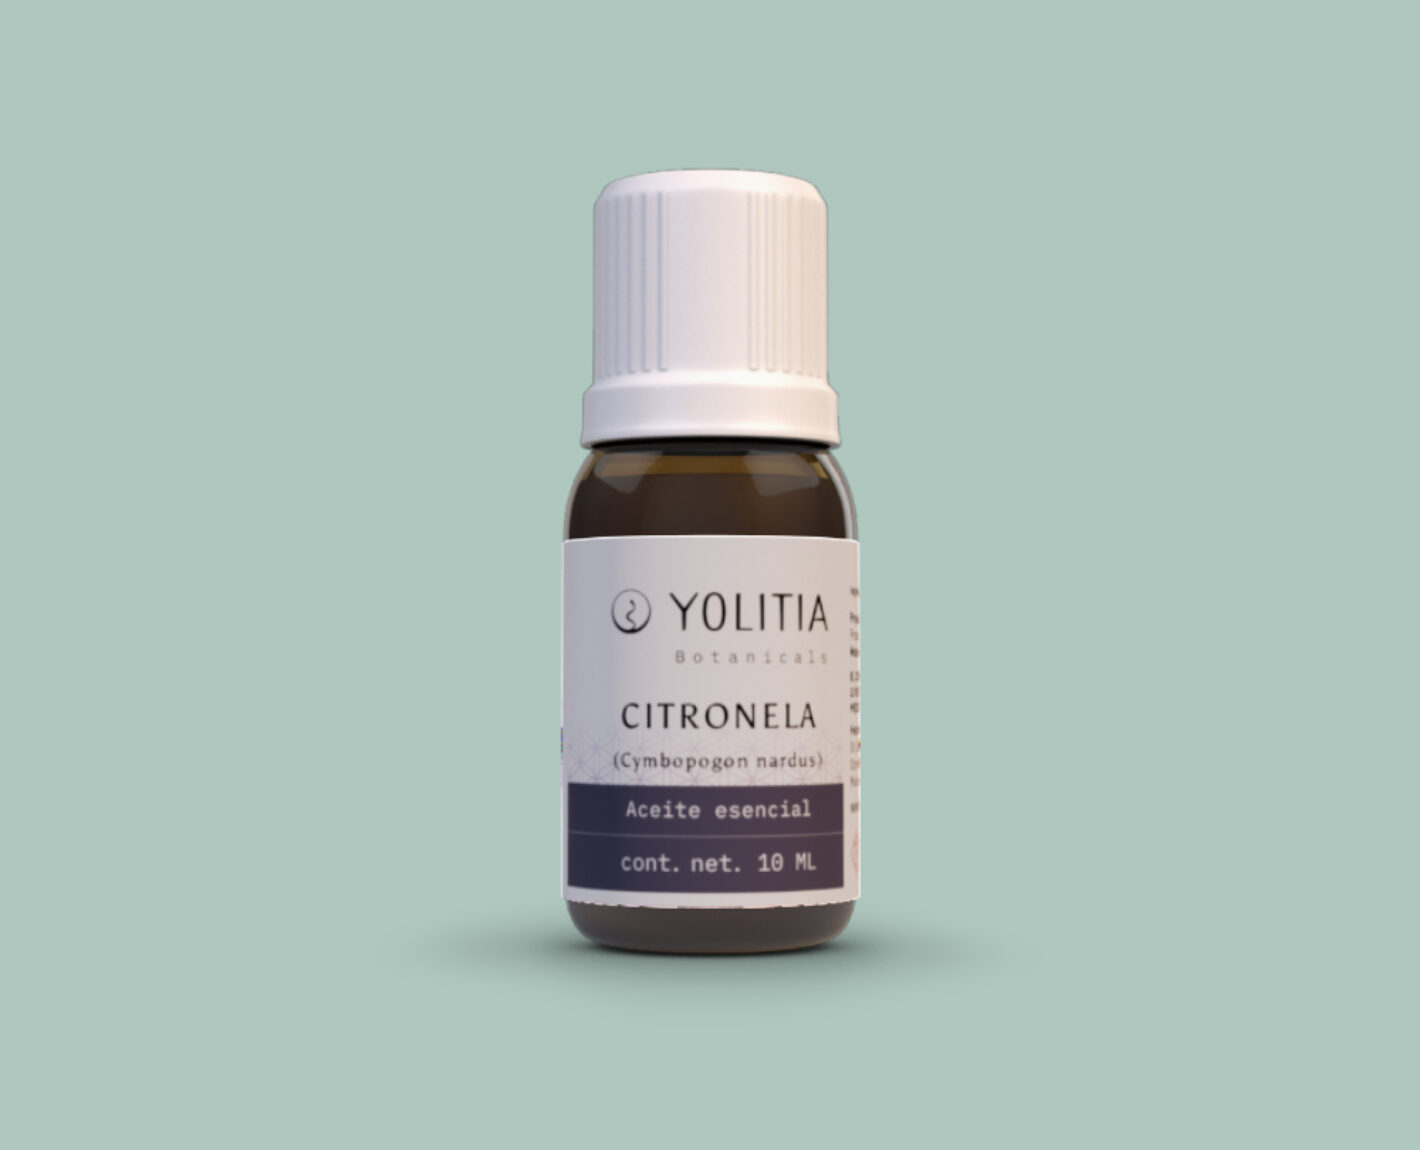 CITRONELA (Cymbopogon nardus) Aceite esencial